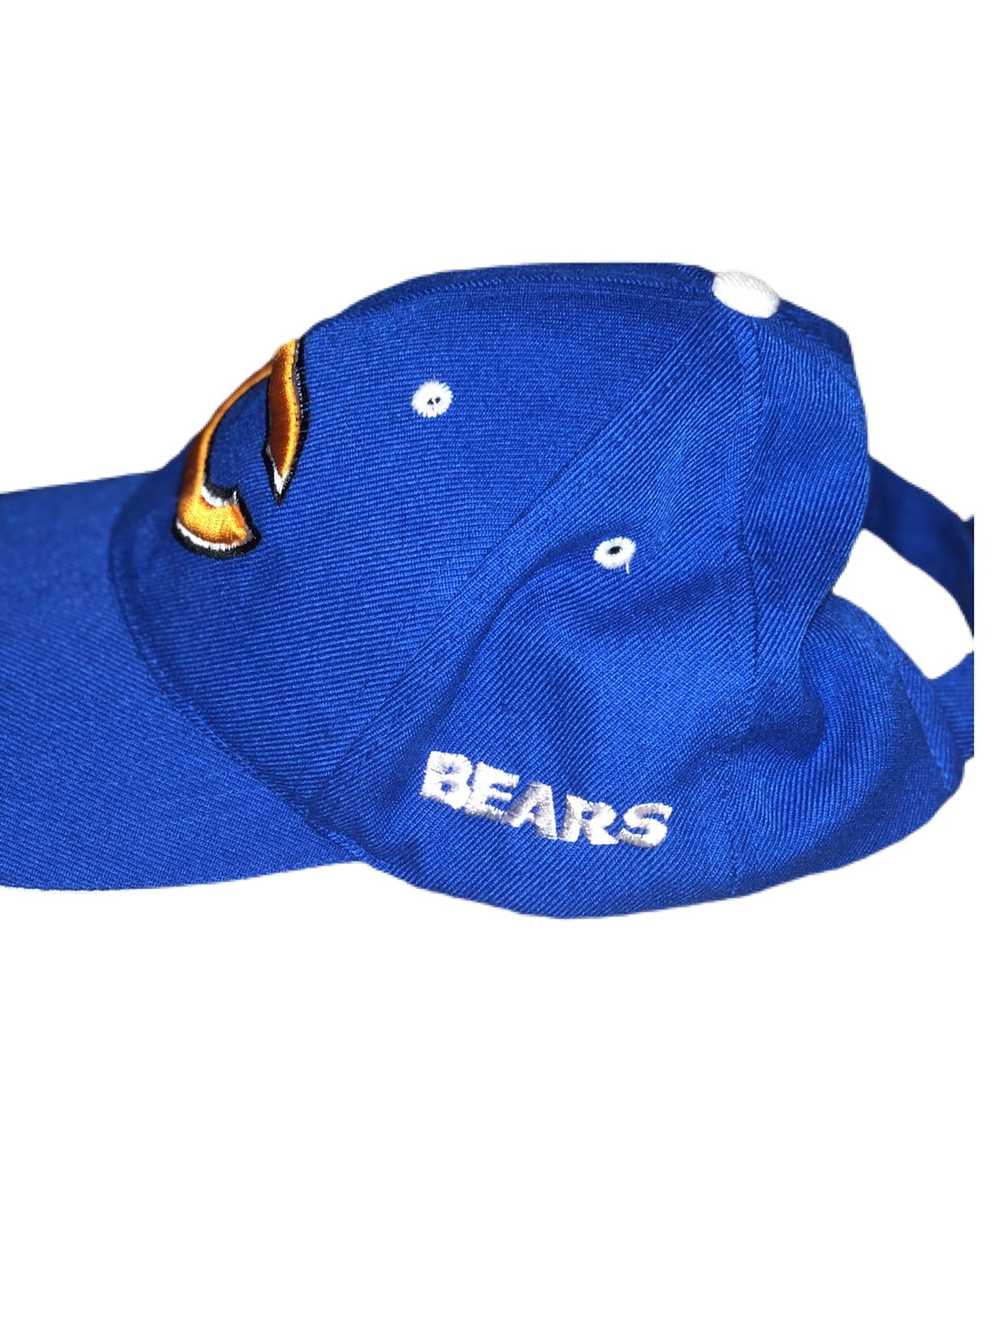 Vintage Vintage Chicago Bears Hat - image 2